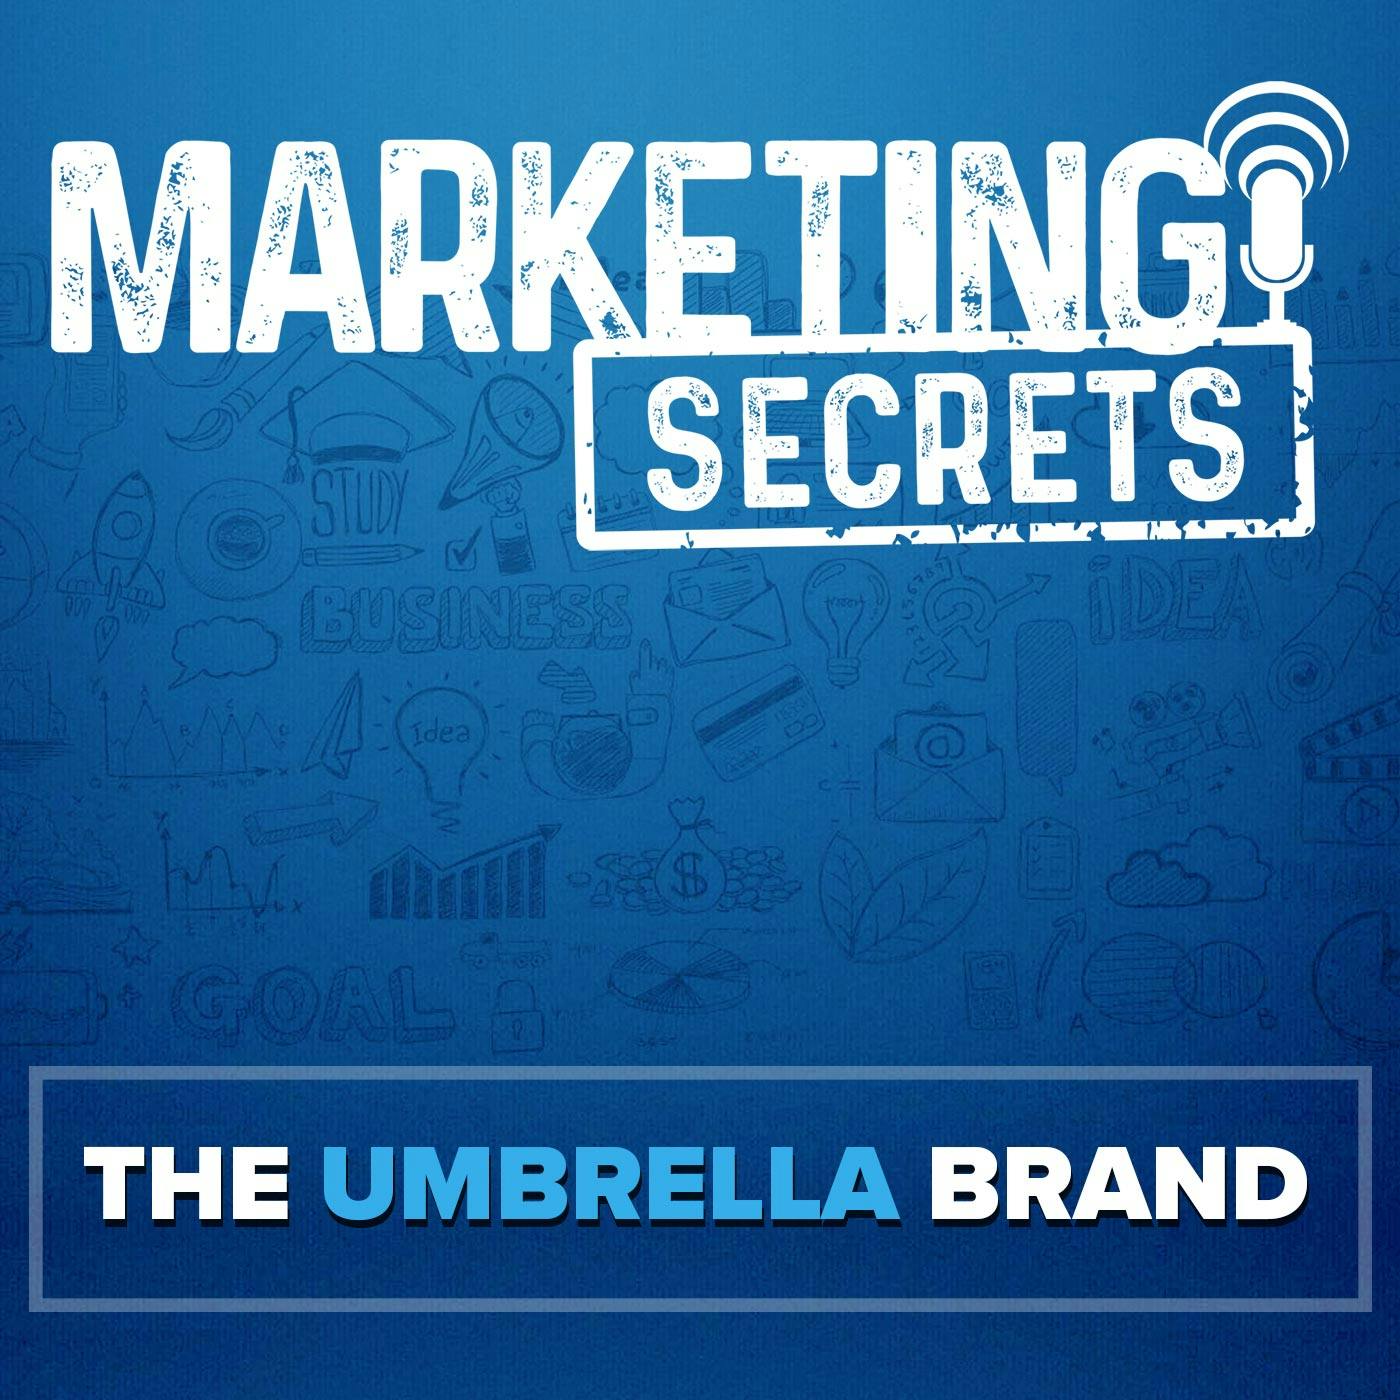 The Umbrella Brand